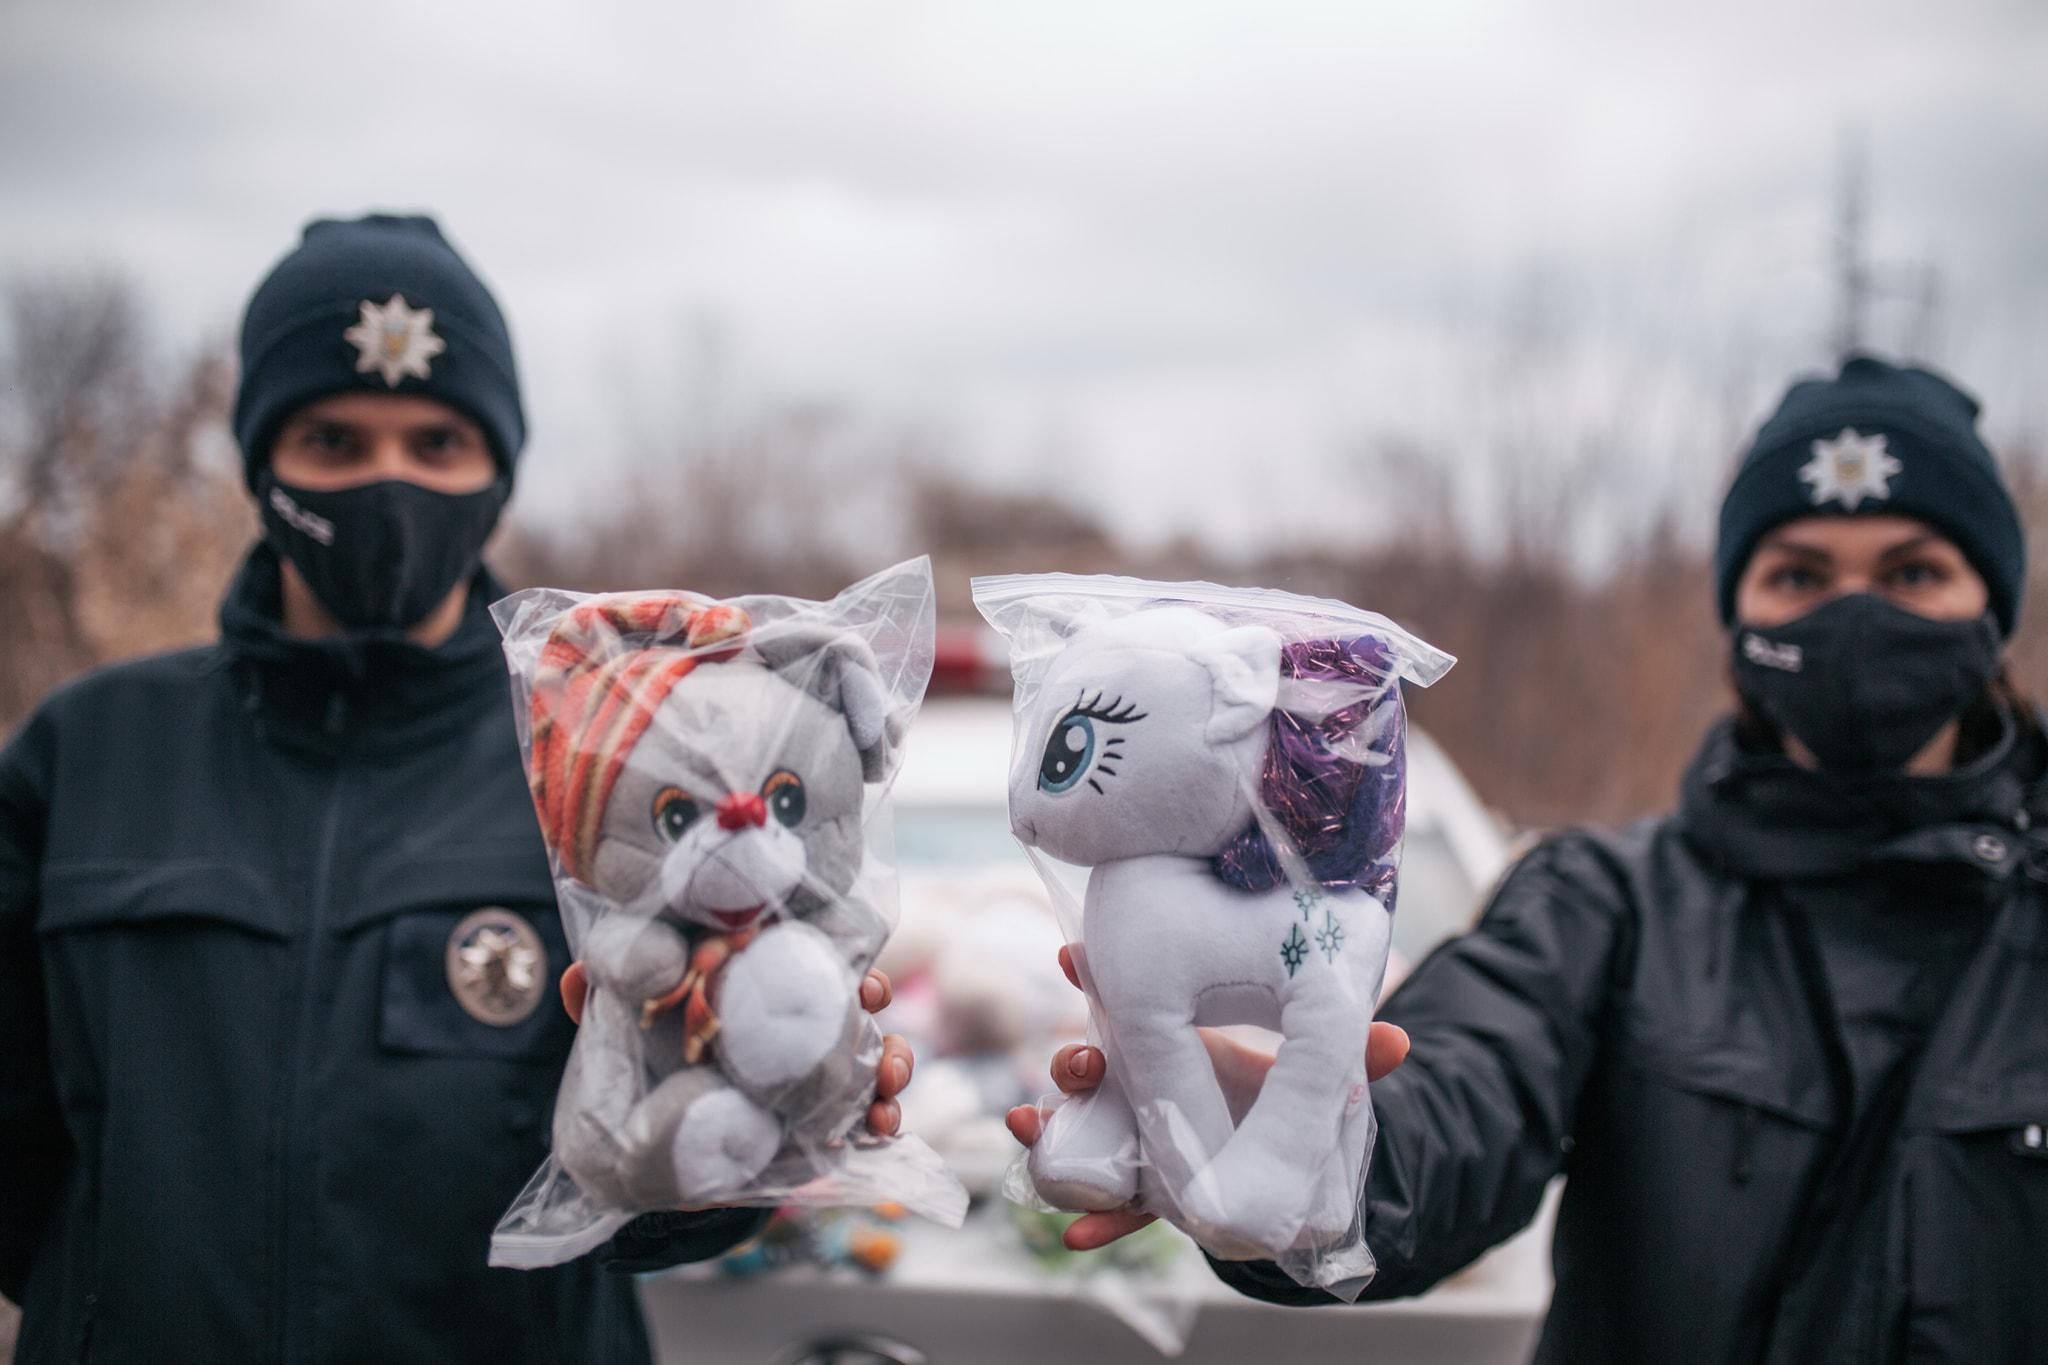 Харківські патрульні возять з собою у машині іграшки